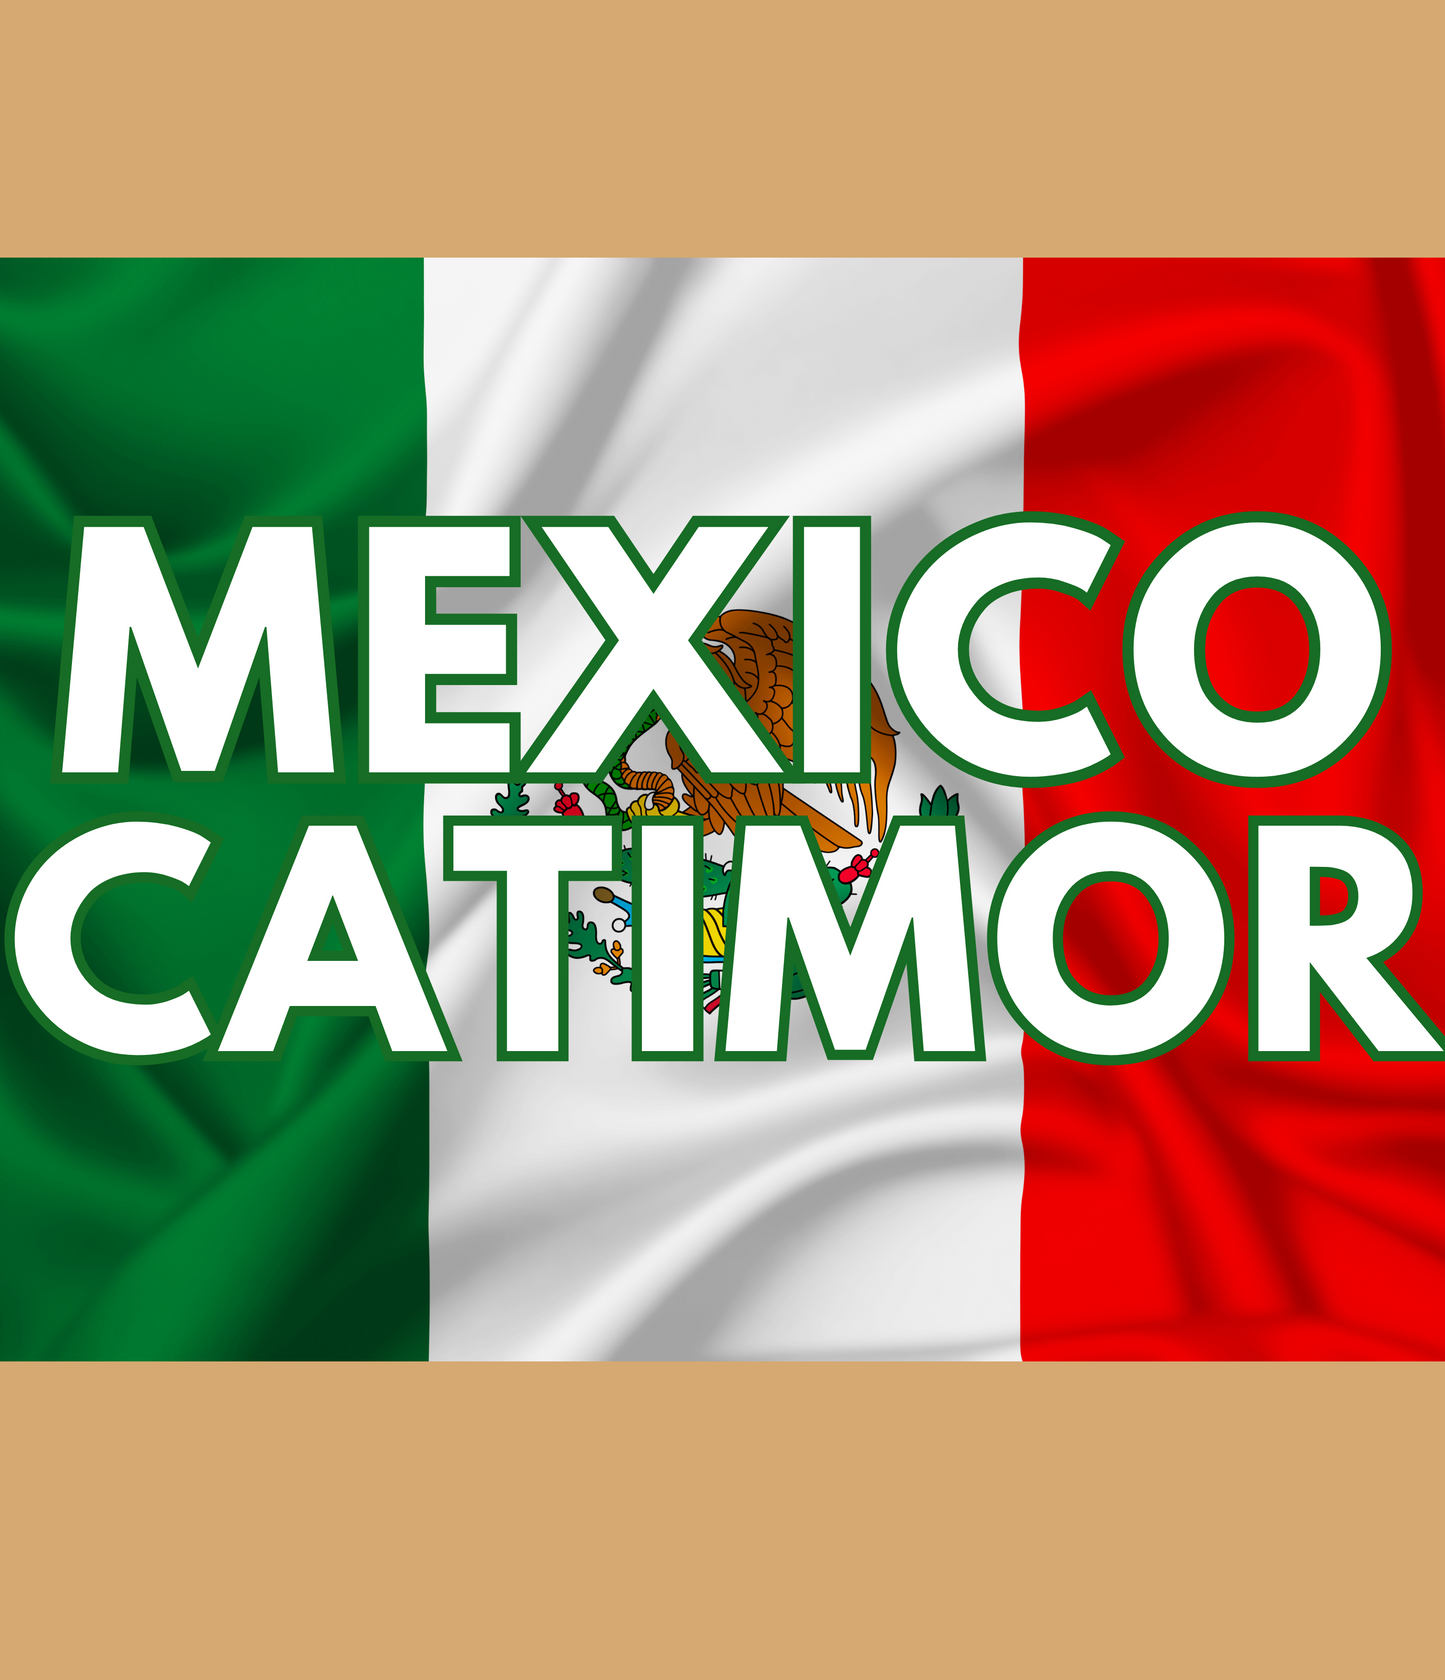 Mexico Catimor